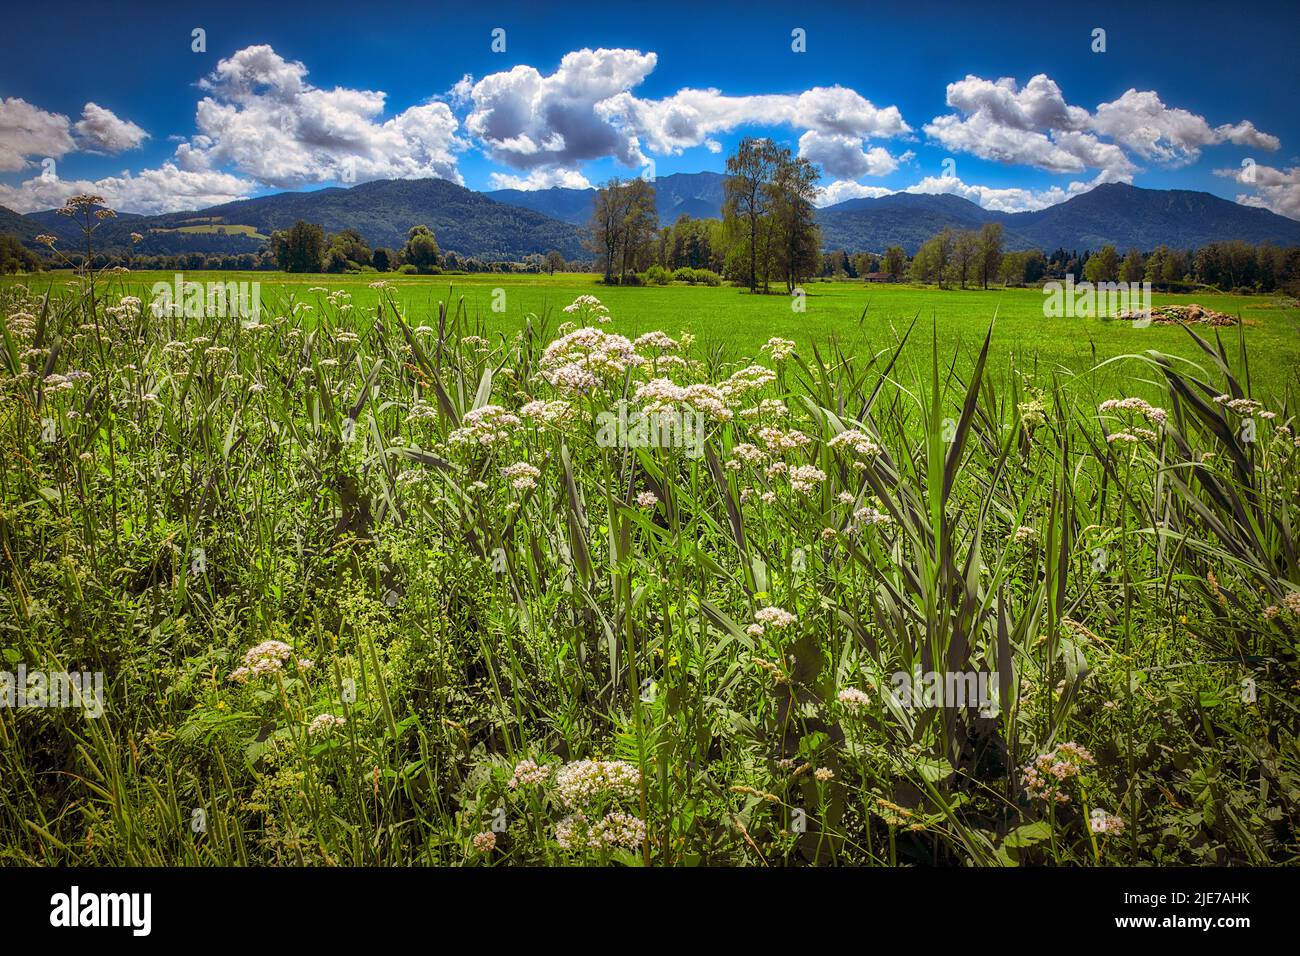 DE - BAVARIA: Landschaftlich reizvolle Aussicht mit Hogweed im Vordergrund beim Loisach Moor bei Bichl, Oberbayern (Oberbayern), Deutschland Stockfoto